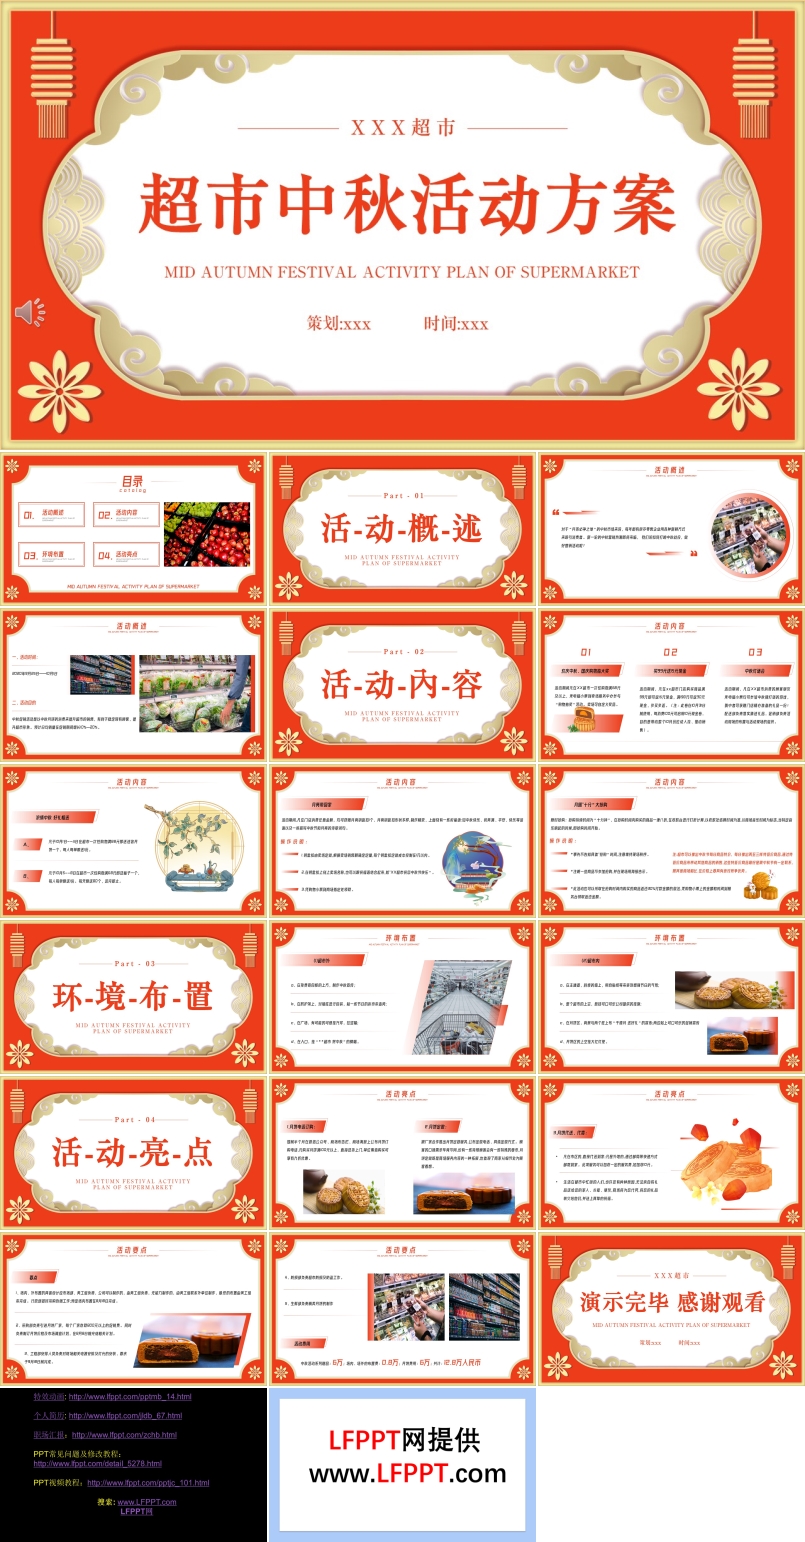 中秋节超市活动策划方案PPT模板